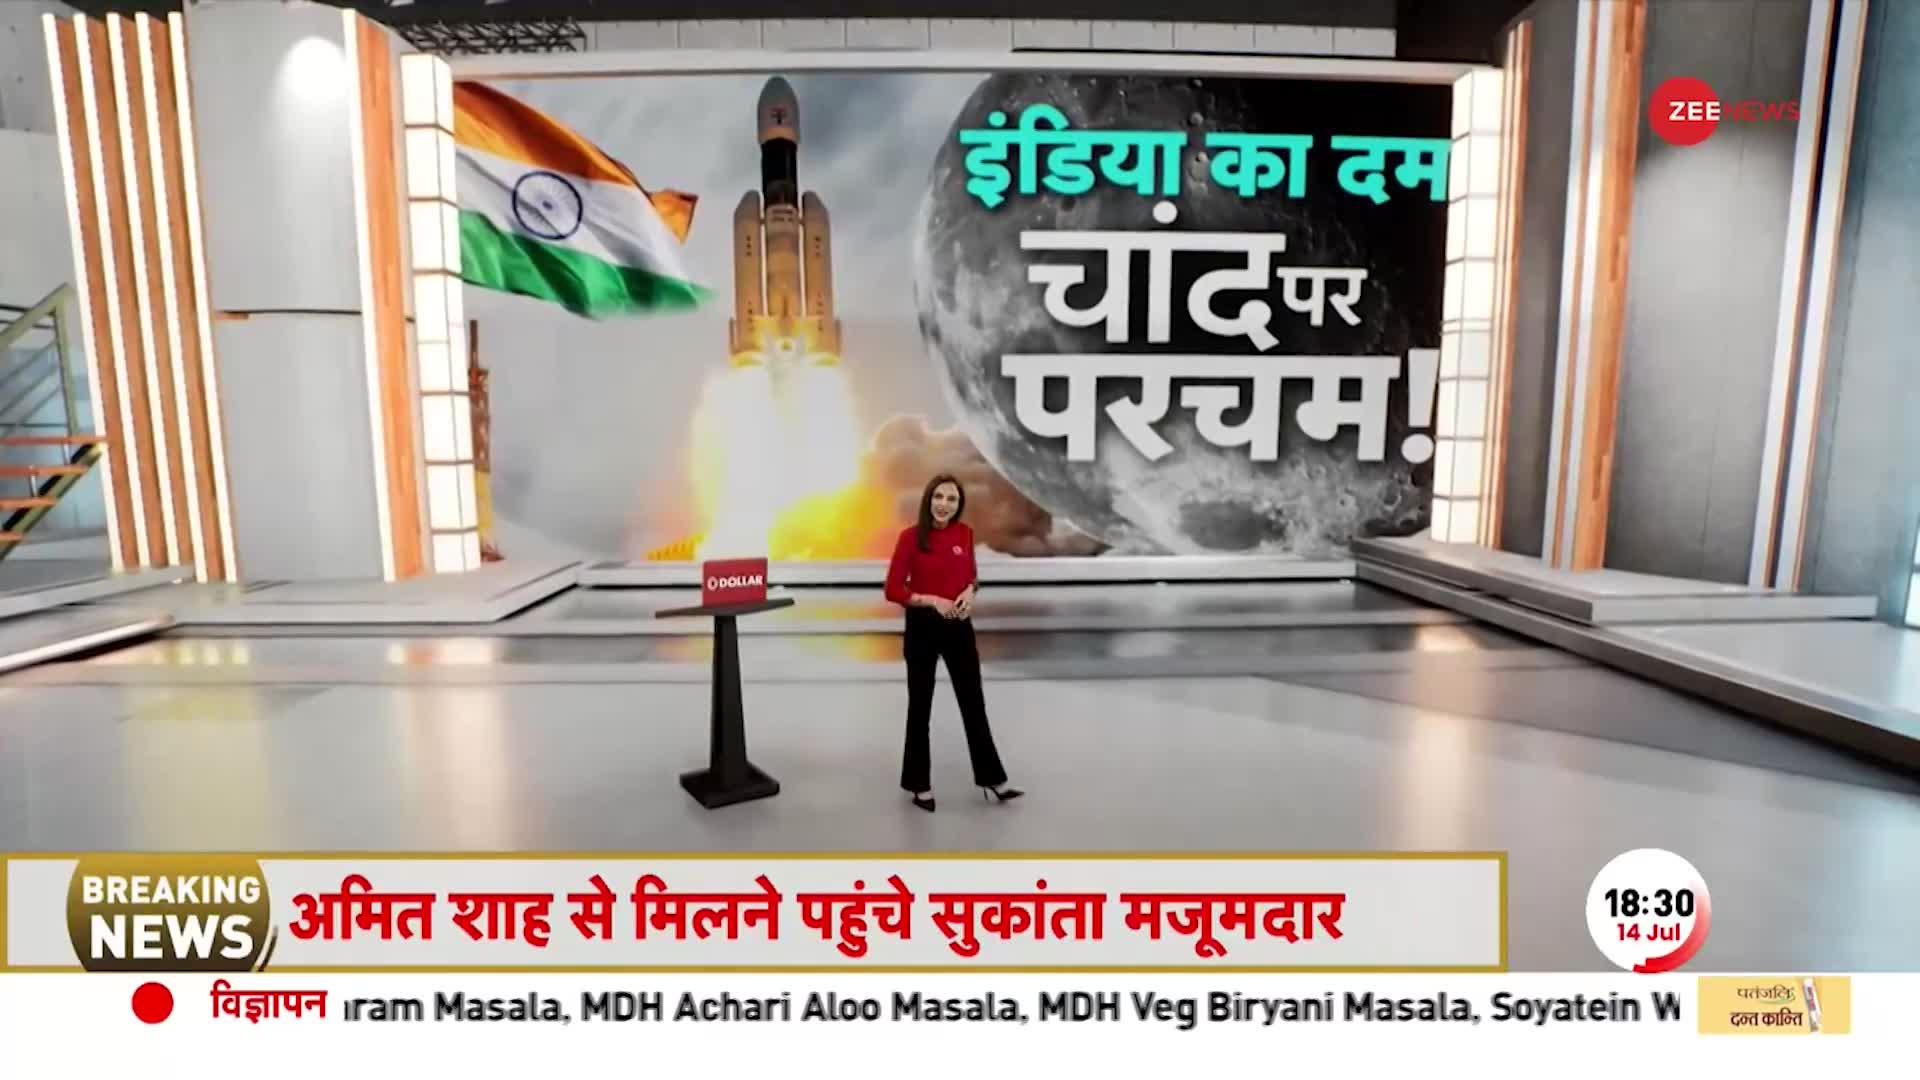 Deshhit: Chandrayaan-3 ने अंतरिक्ष में लहराया परचम, पड़ोसियों को क्यों होने लगी 'जलन'। Mission Moon